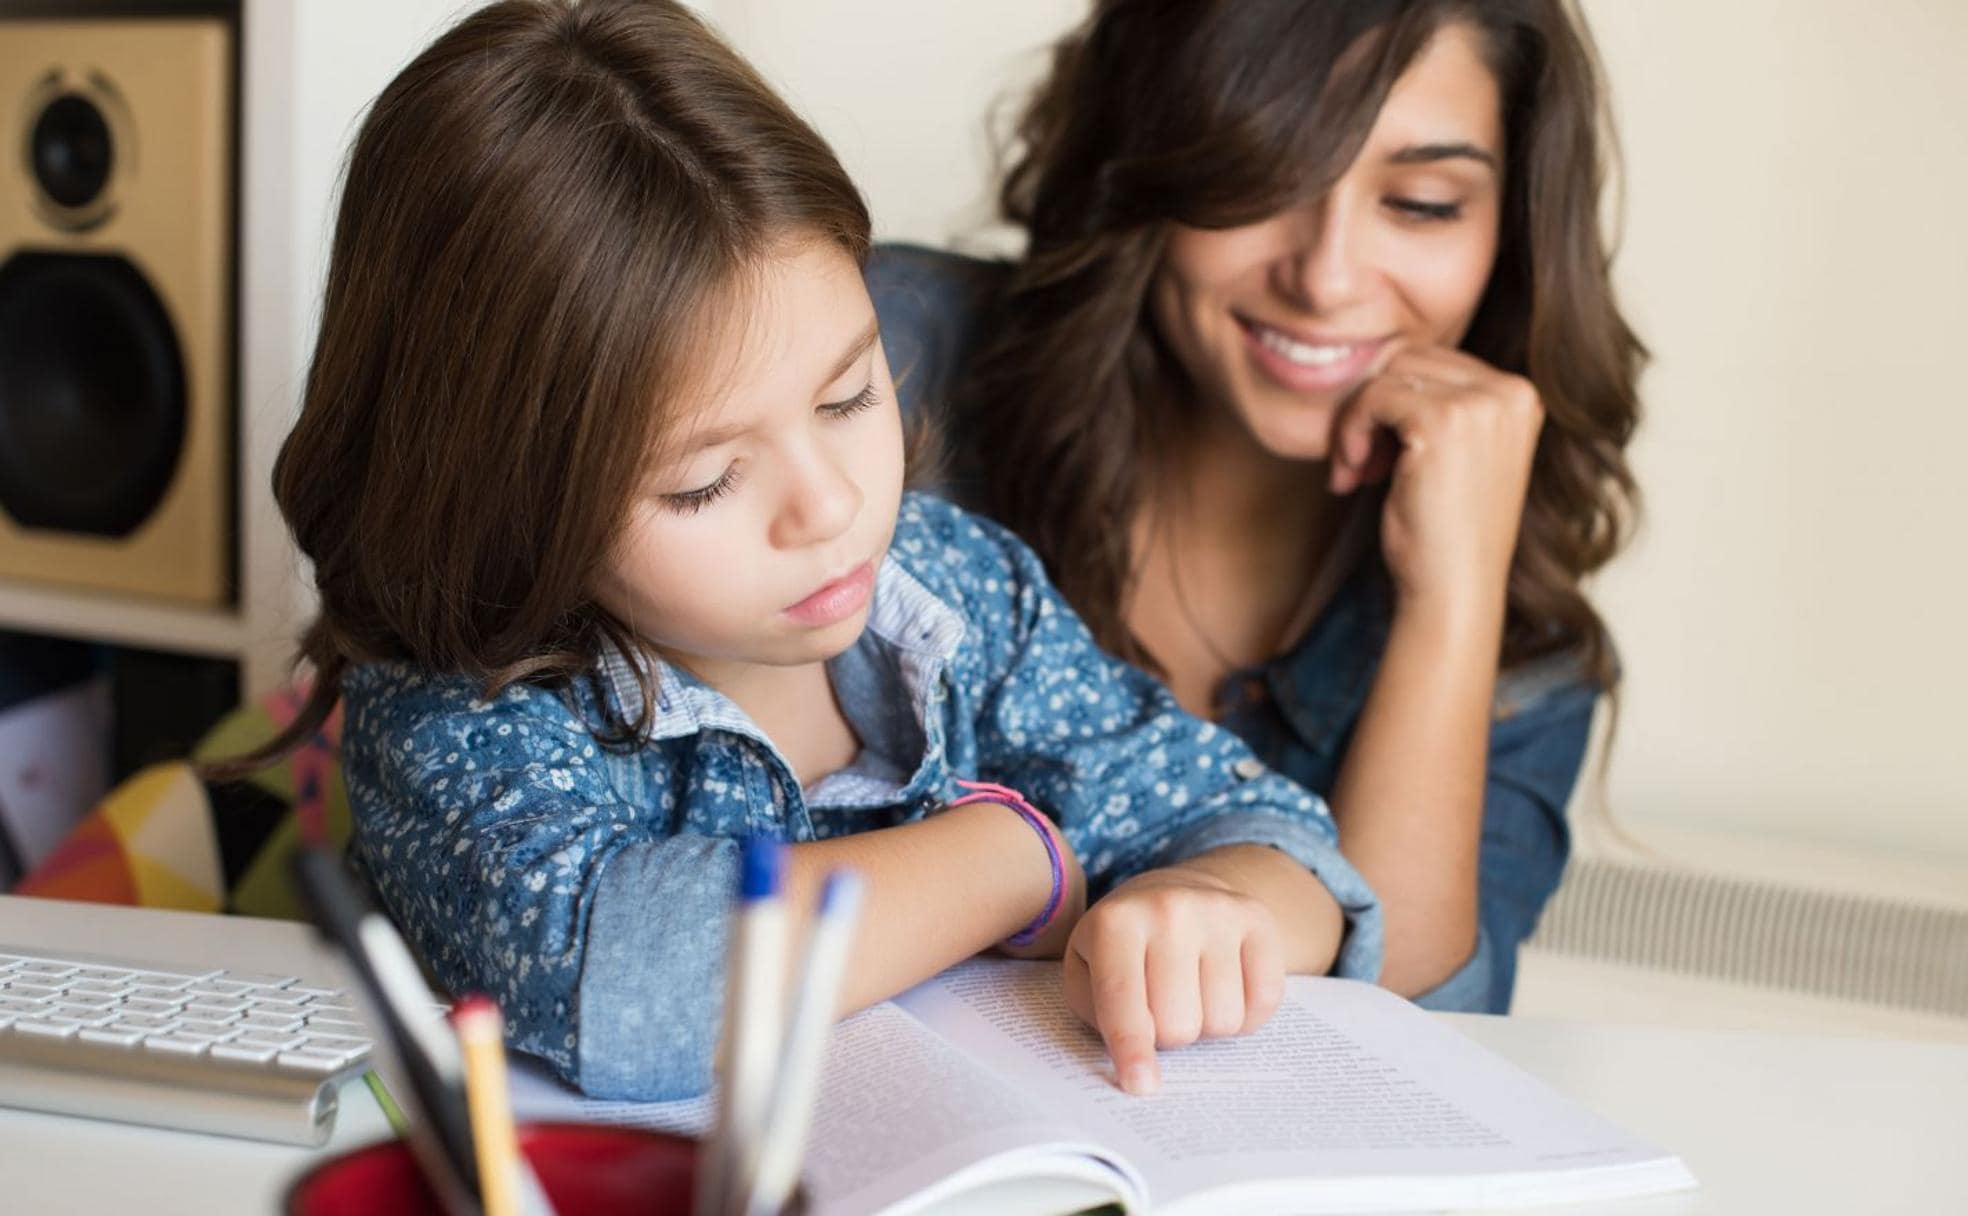 Leer juntos en voz alta ayuda a facilitar la fluidez.